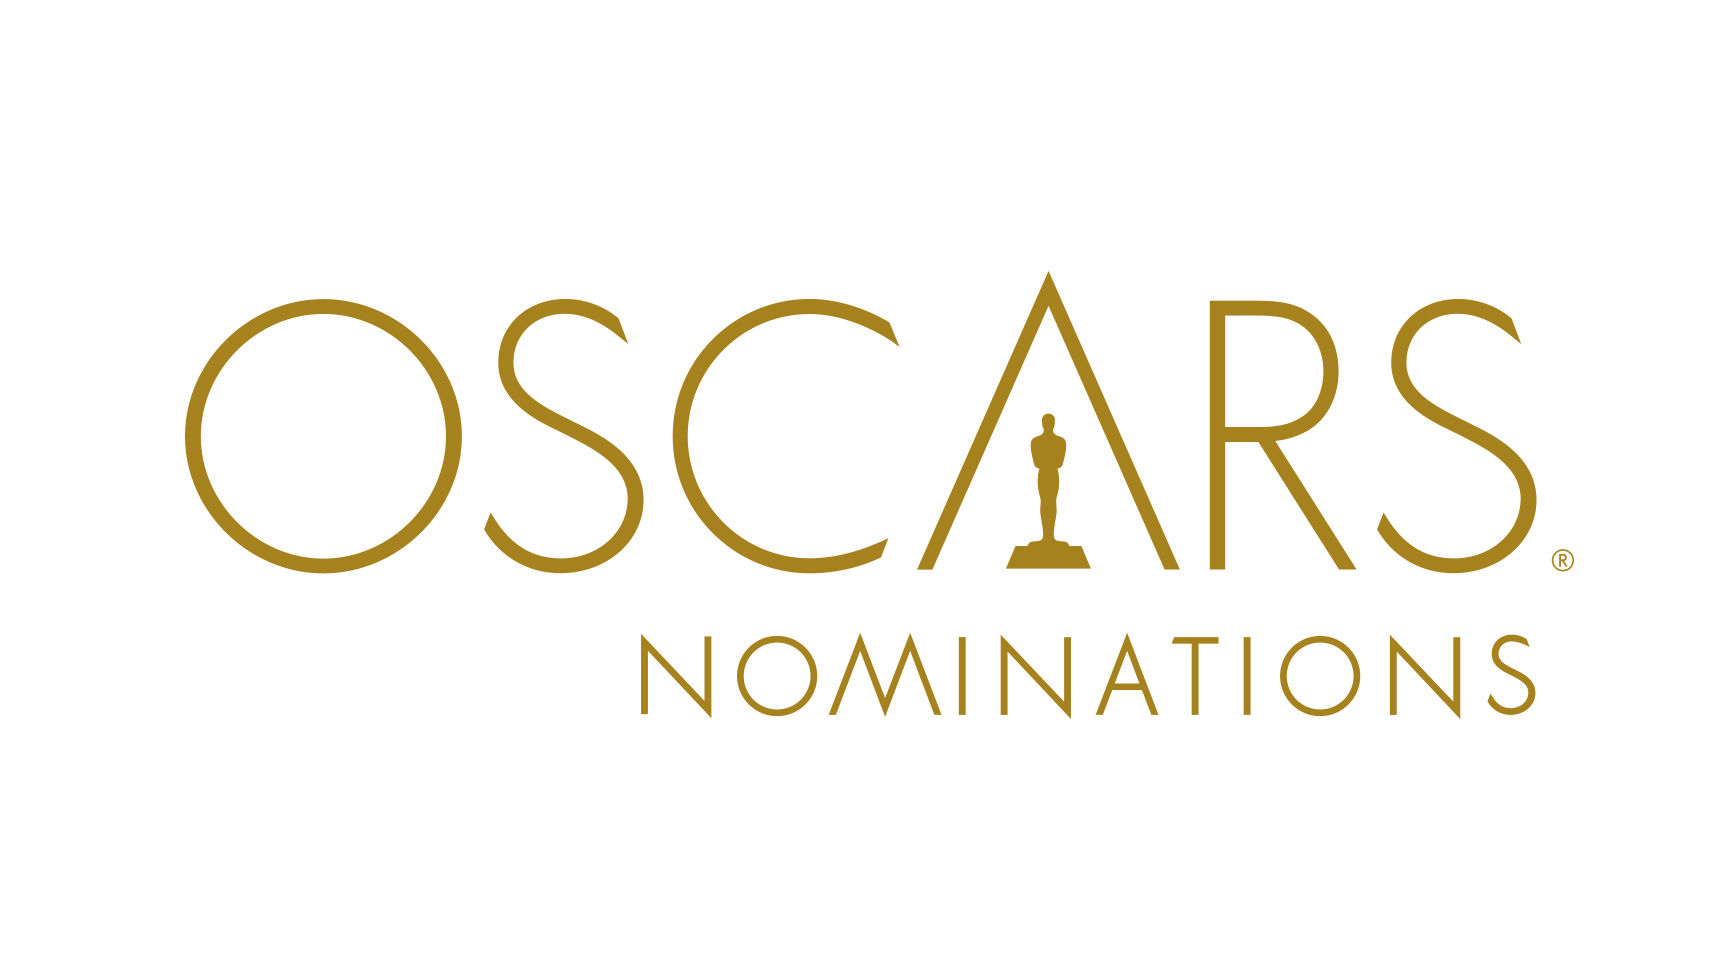 The 87th Academy Award Nomina